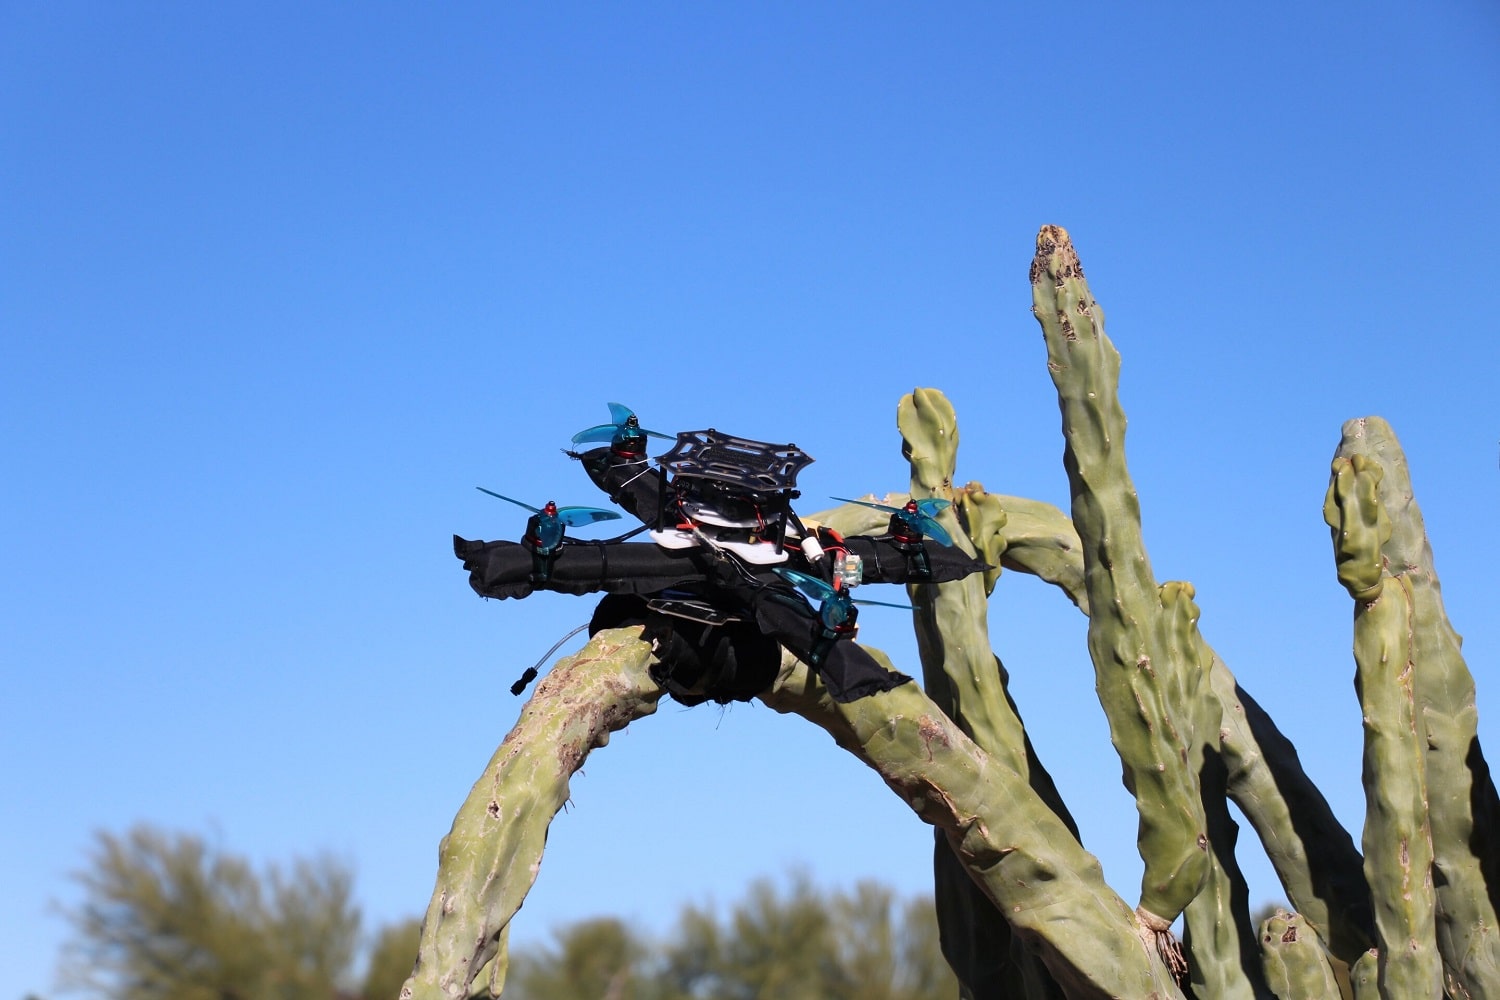 Çarpmaların üstesinden gelmek için tasarlanmış hafif, şişirilebilir bir drone